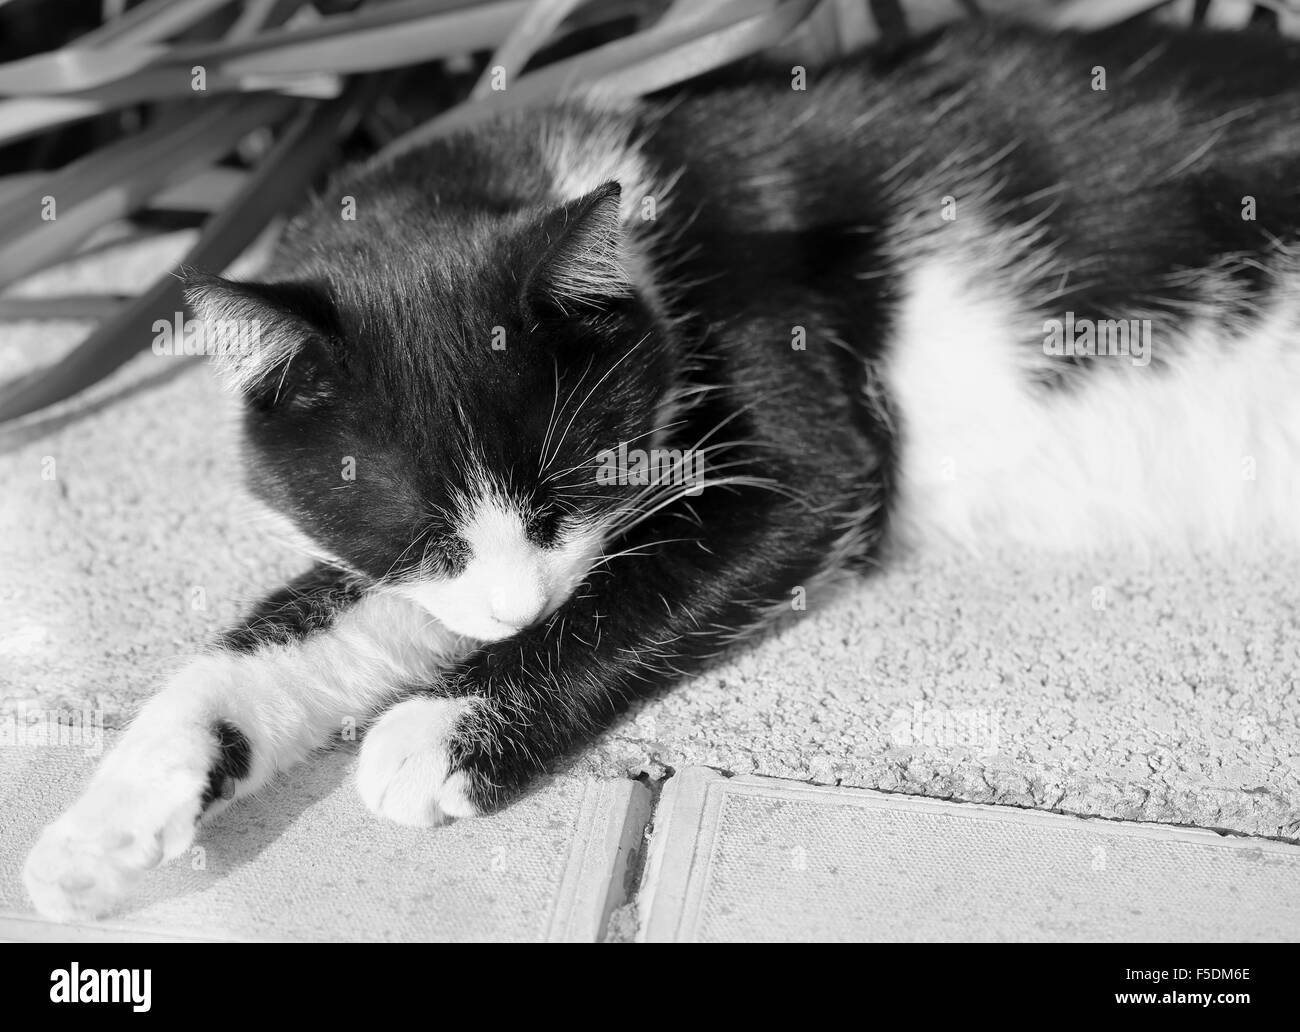 Beau chat couché sur le sol photographié close up Banque D'Images